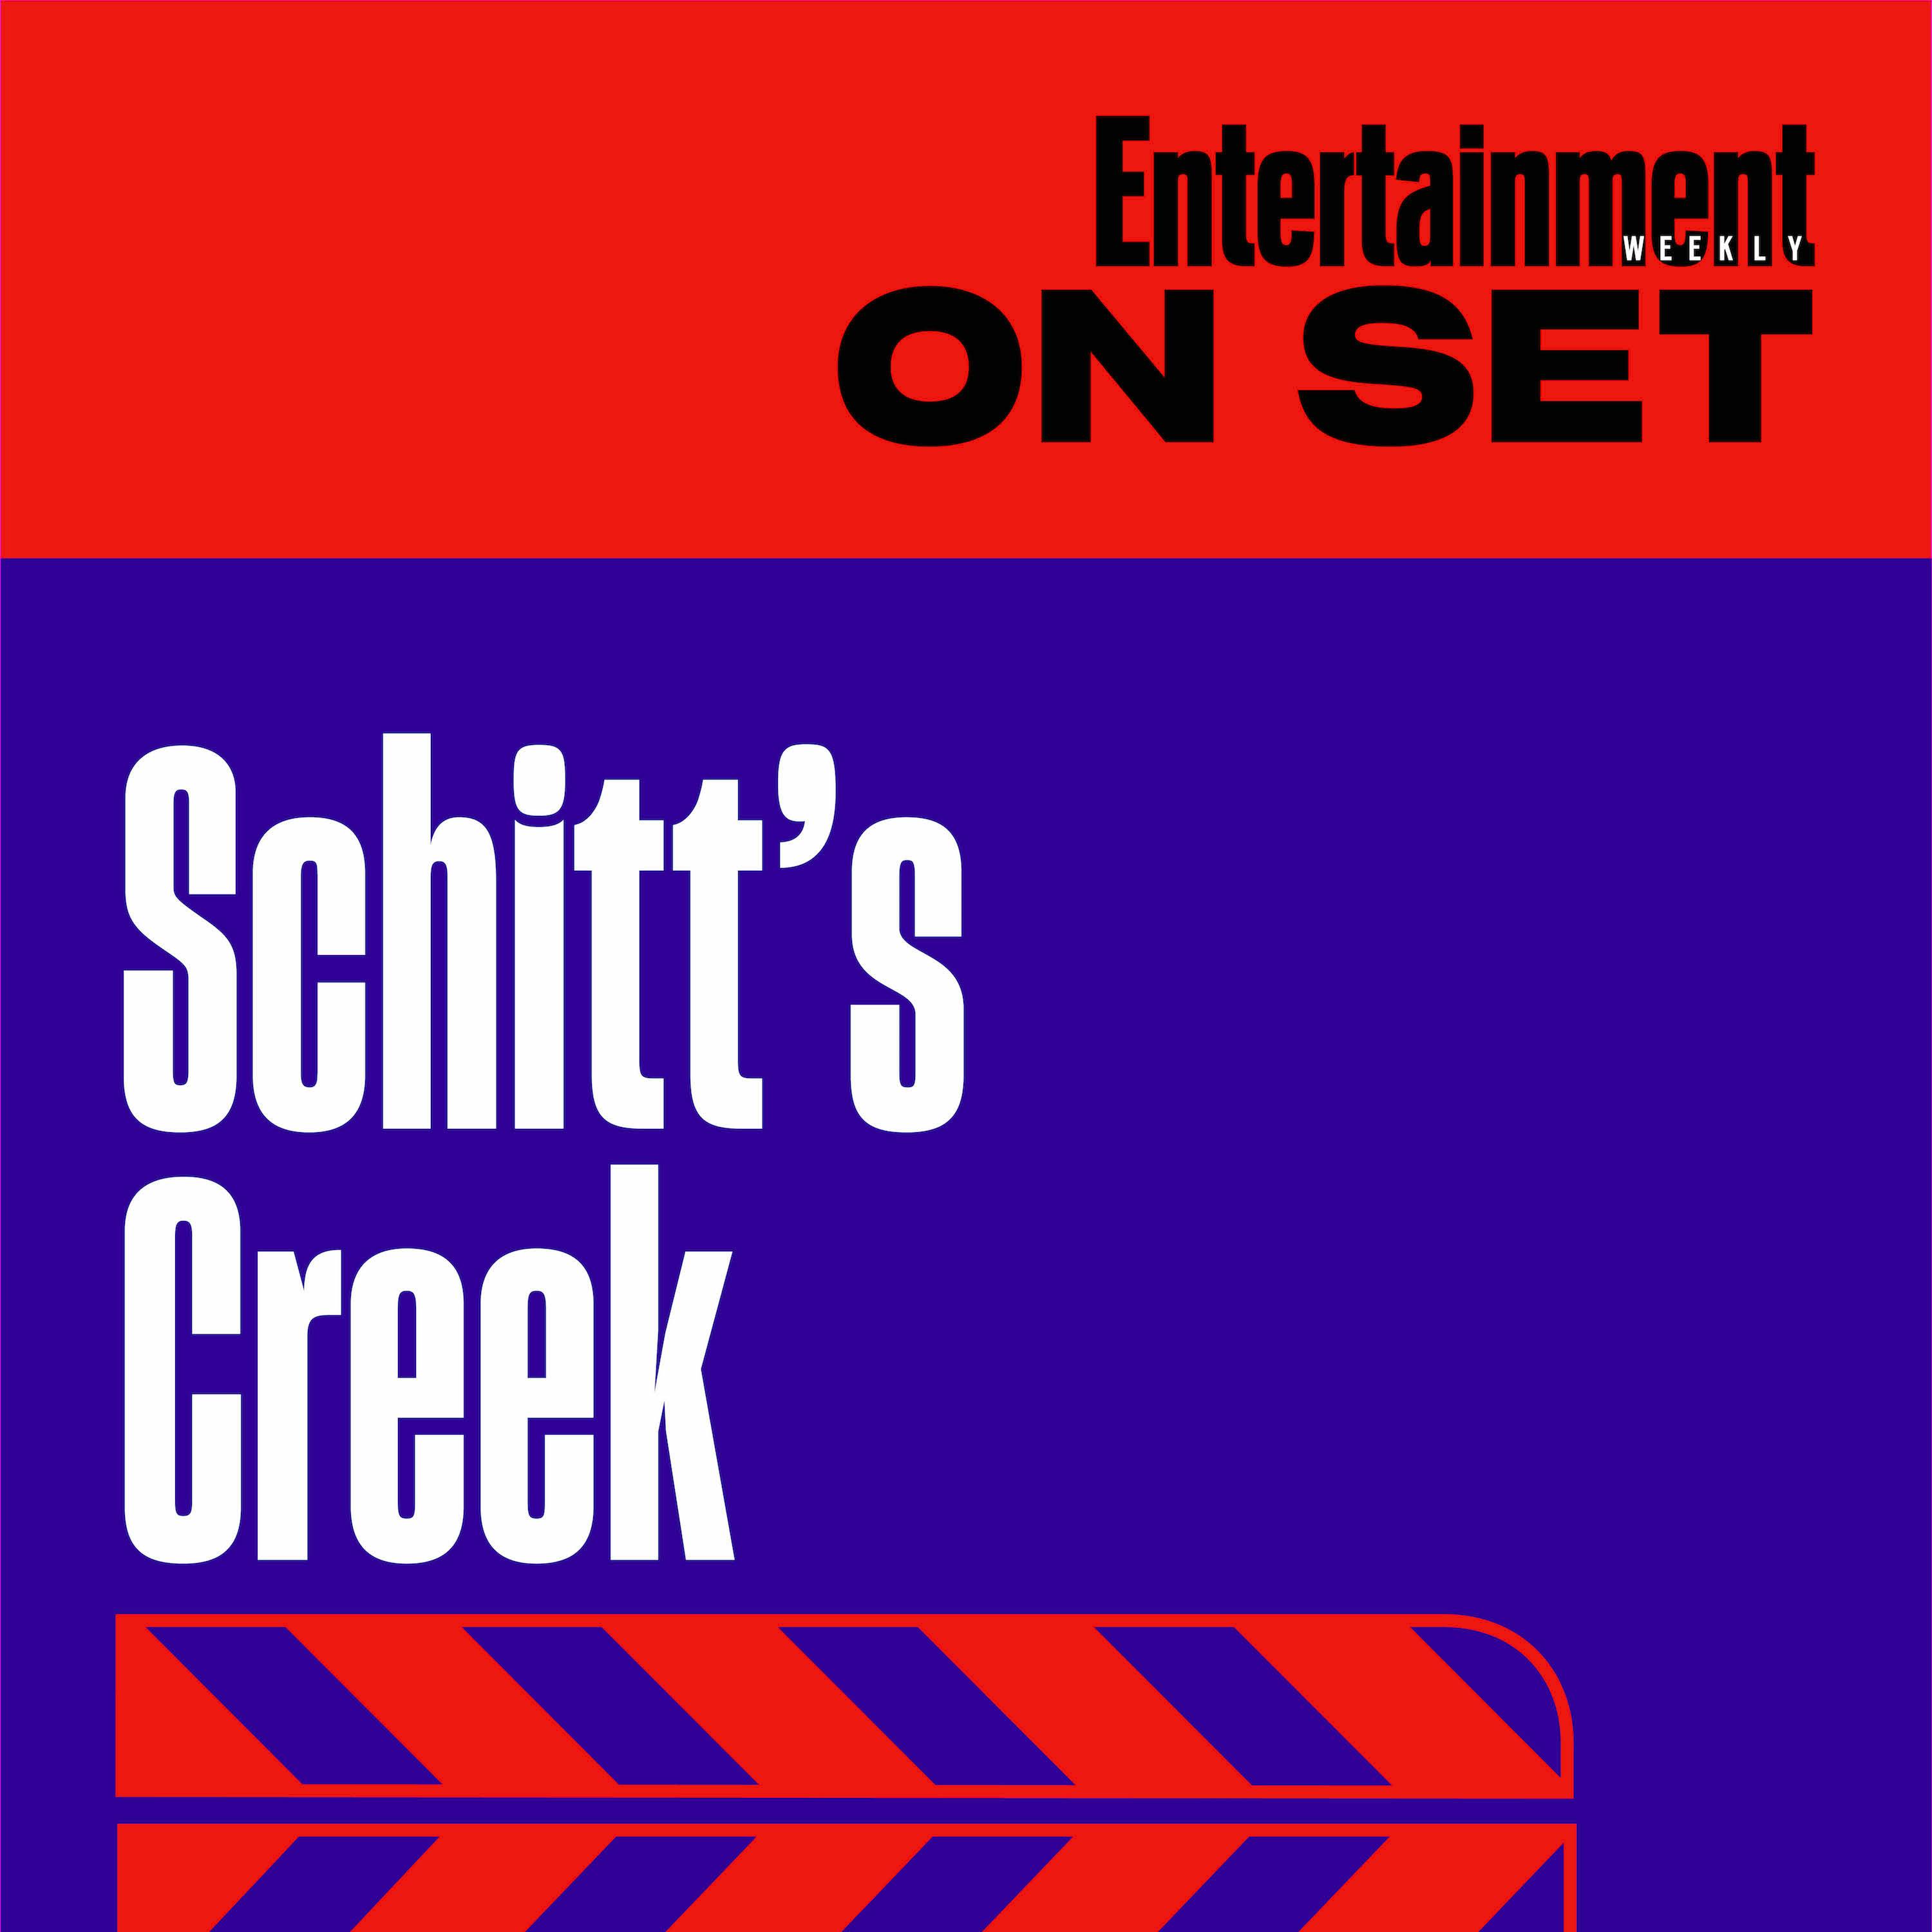 EW On Set: Schitt's Creek Episode 6.02 "The Incident"